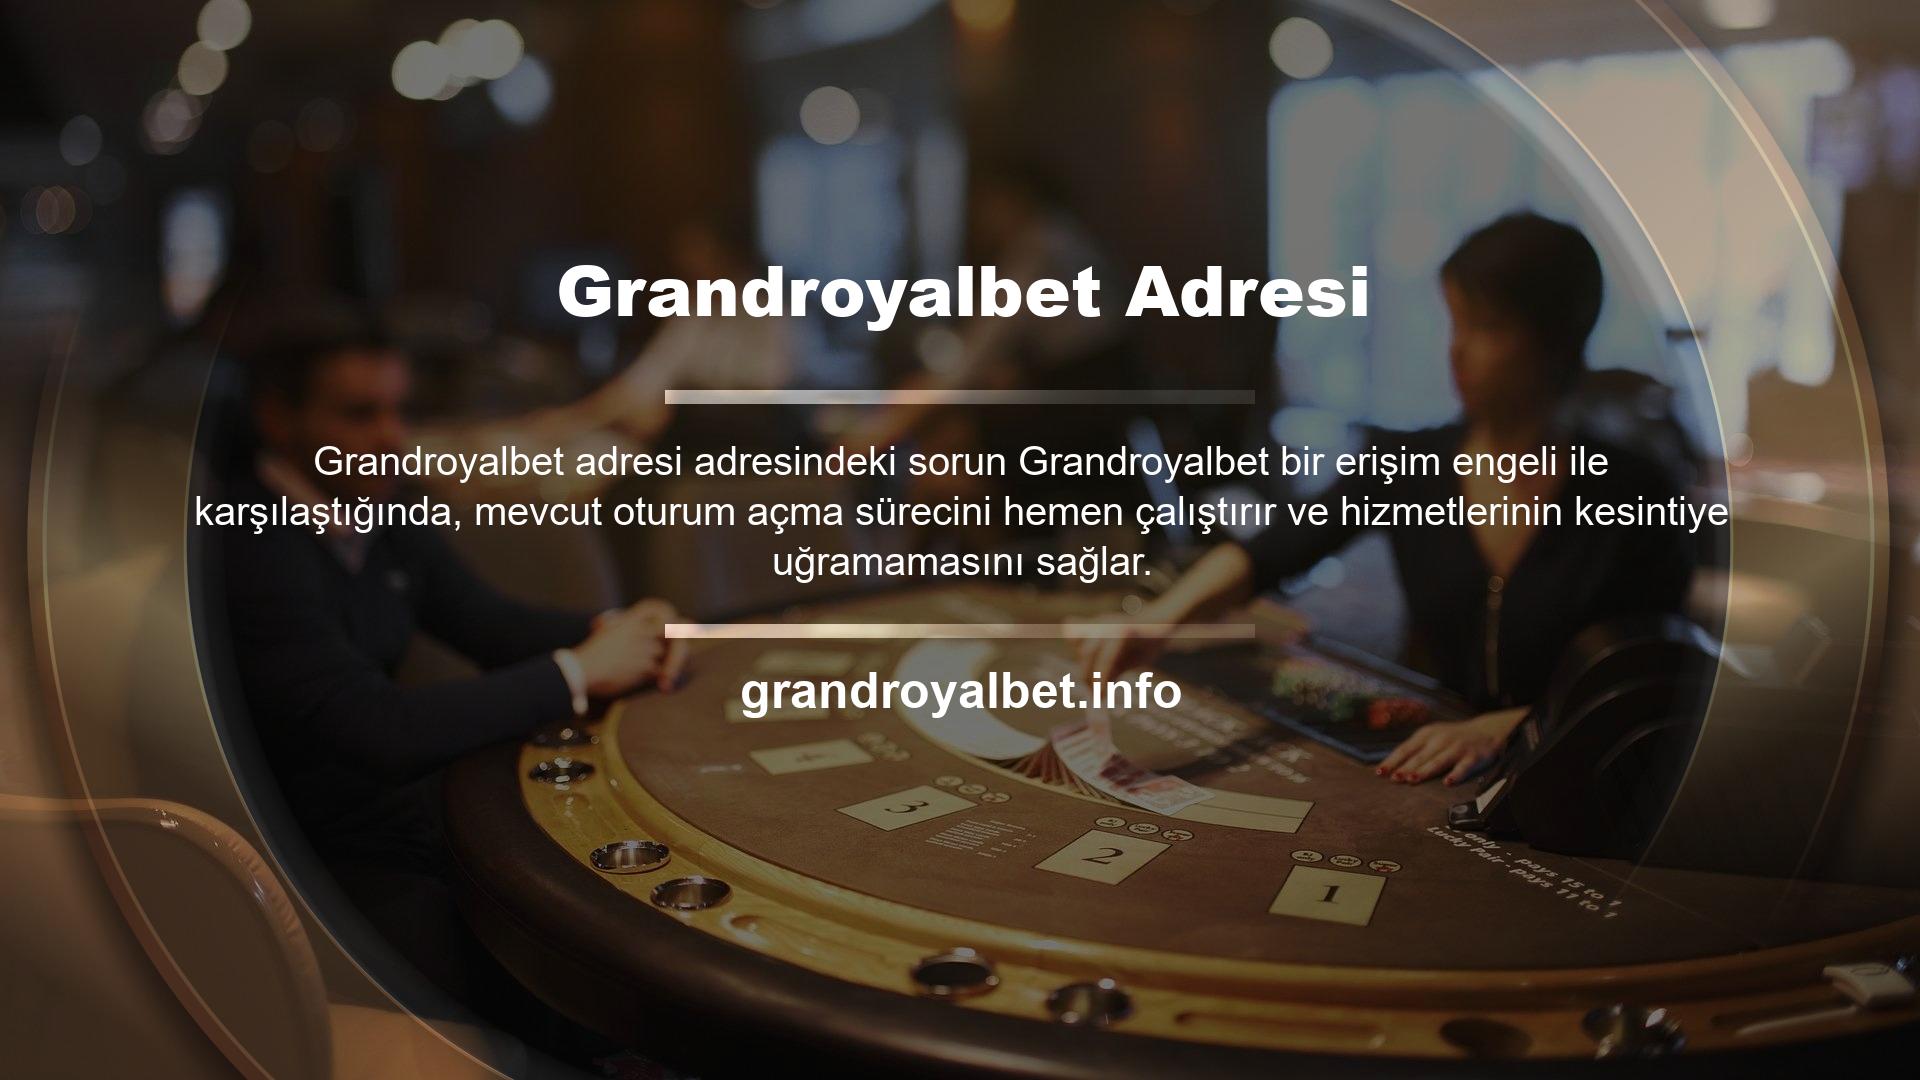 Kullanıcının mevcut oturumu, Türk kullanıcıların spor Grandroyalbet adresi bahisleri yapmak için giriş yapabilecekleri bir adres olan Grandroyalbet